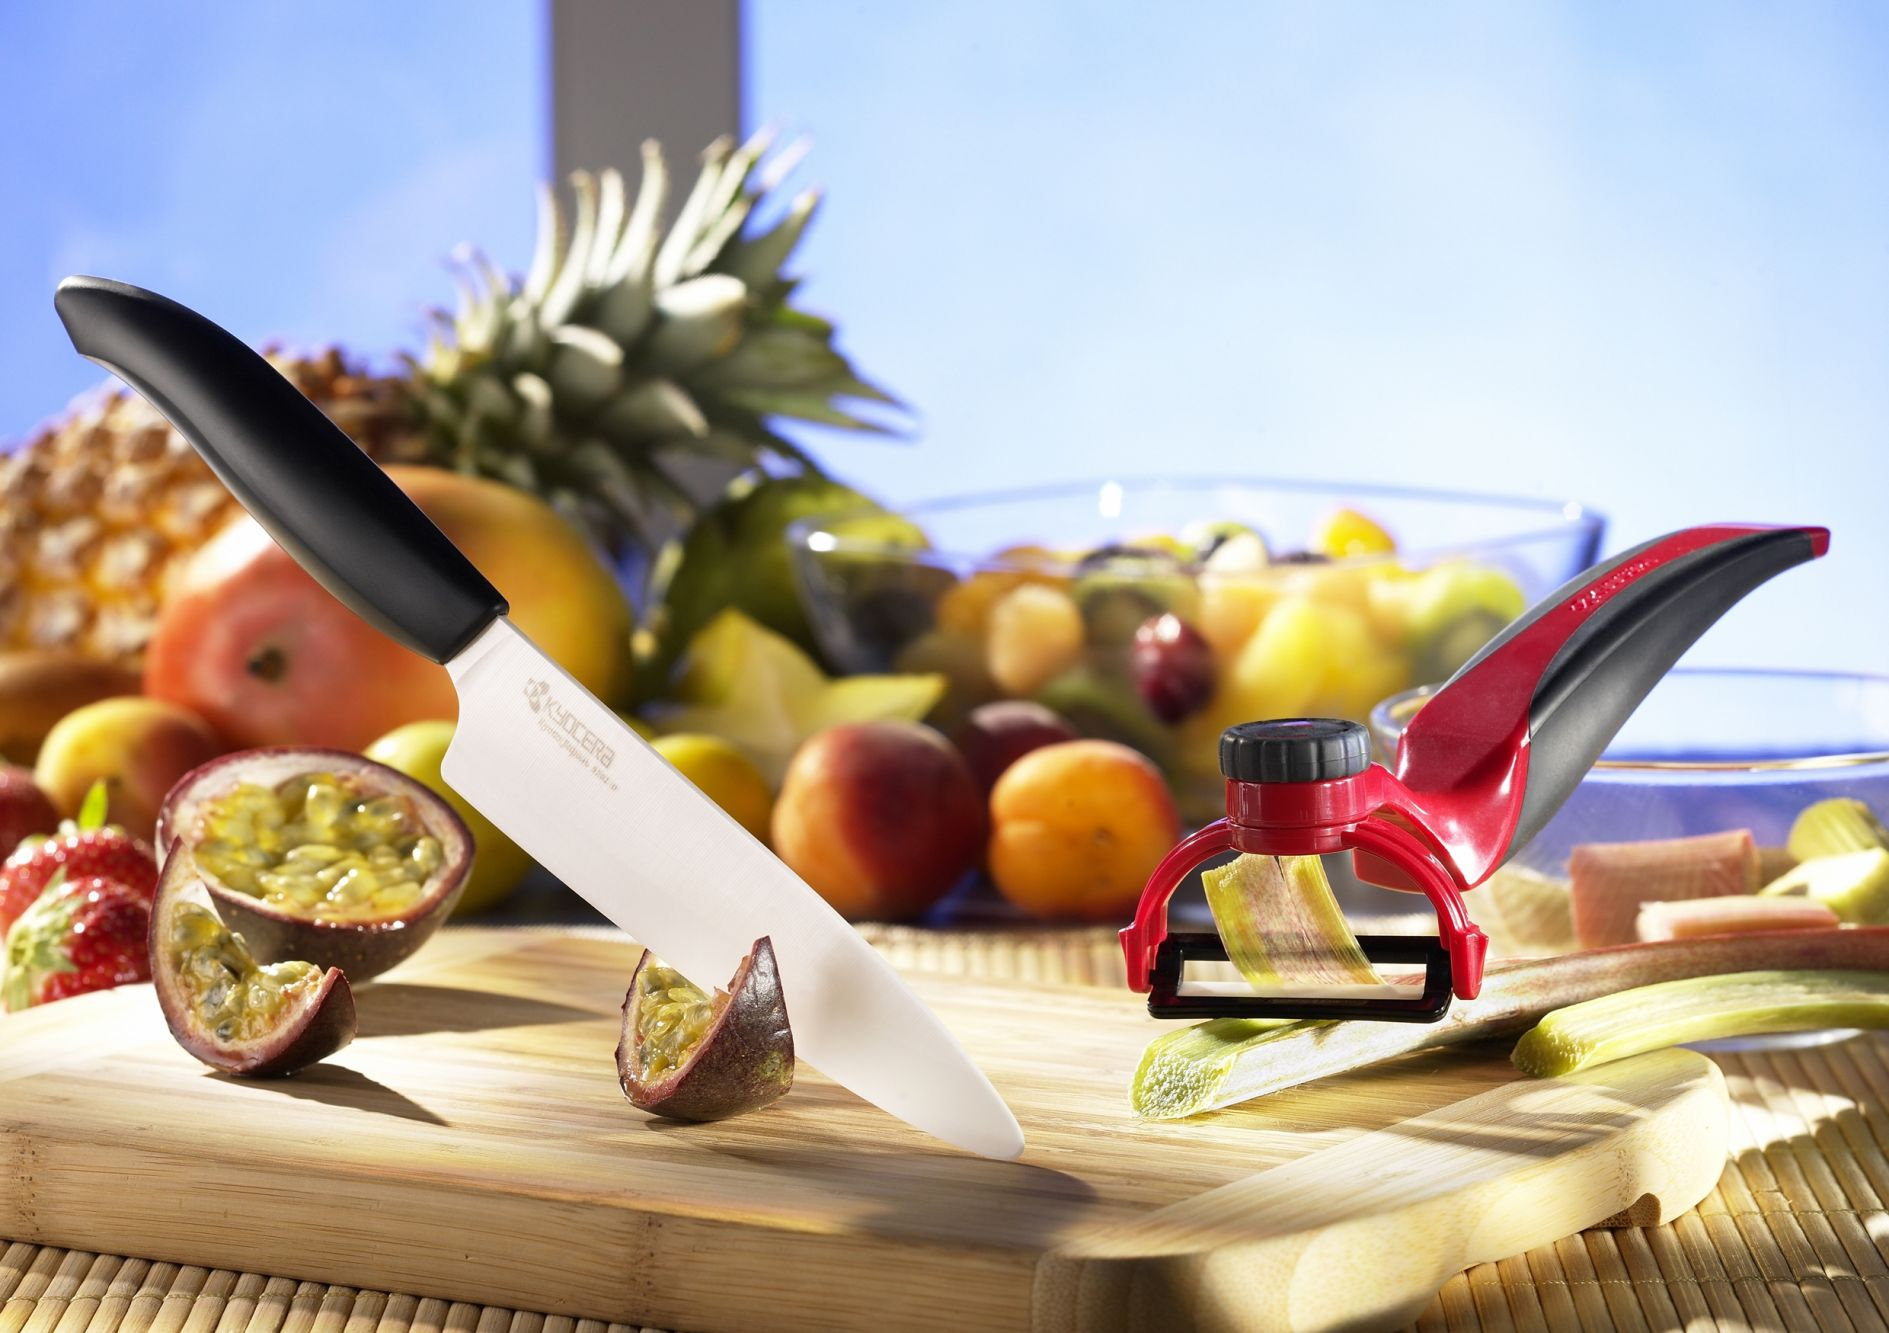 HACKIG Couteau de cuisine, céramique - IKEA